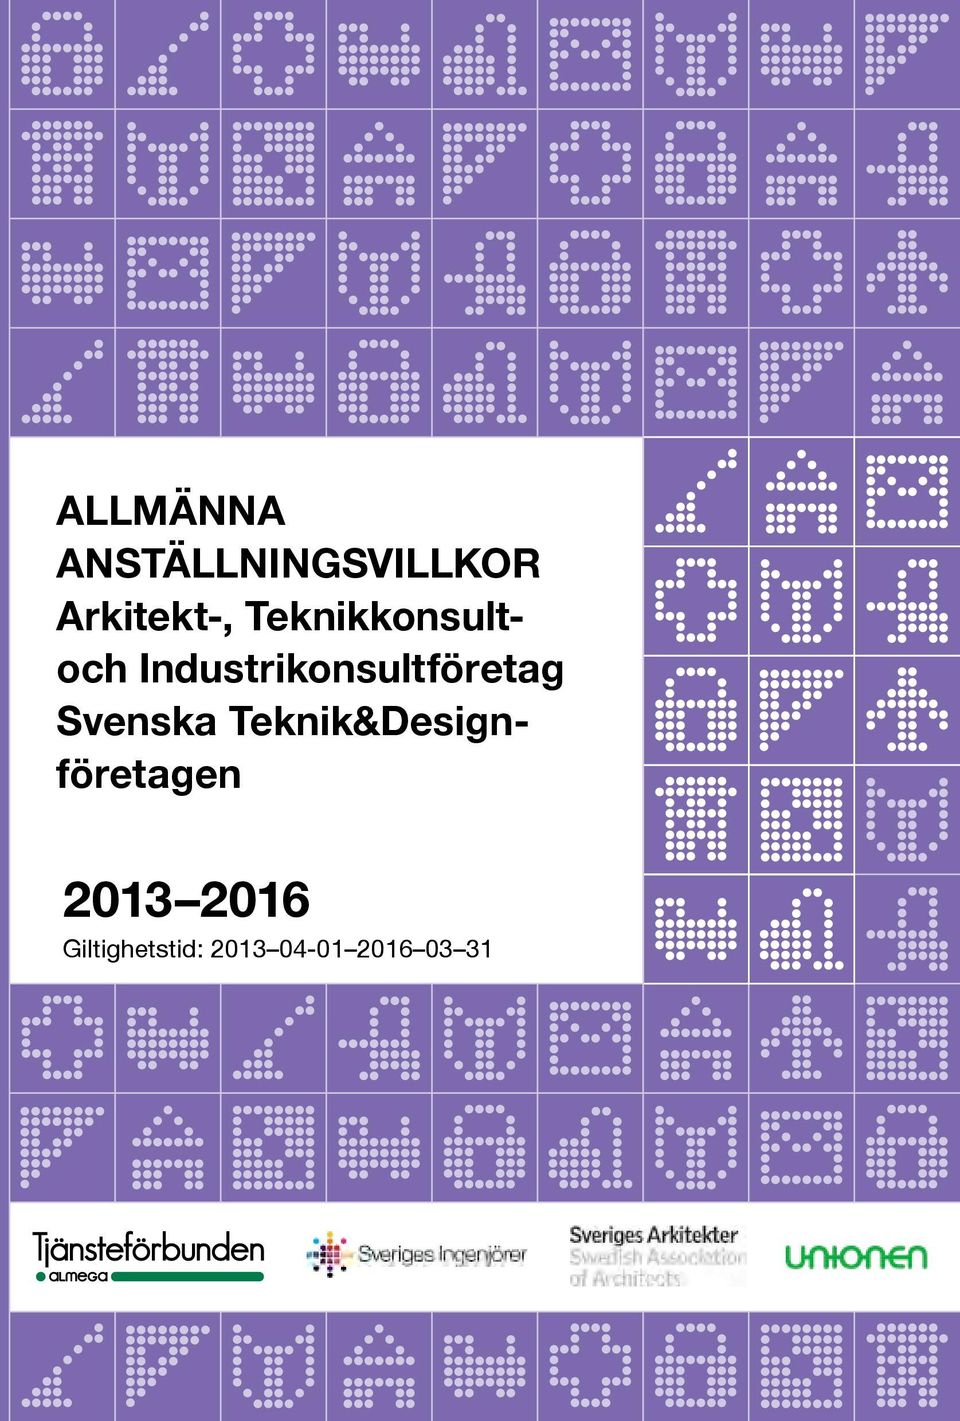 Svenska Teknik&Designföretagen 2013